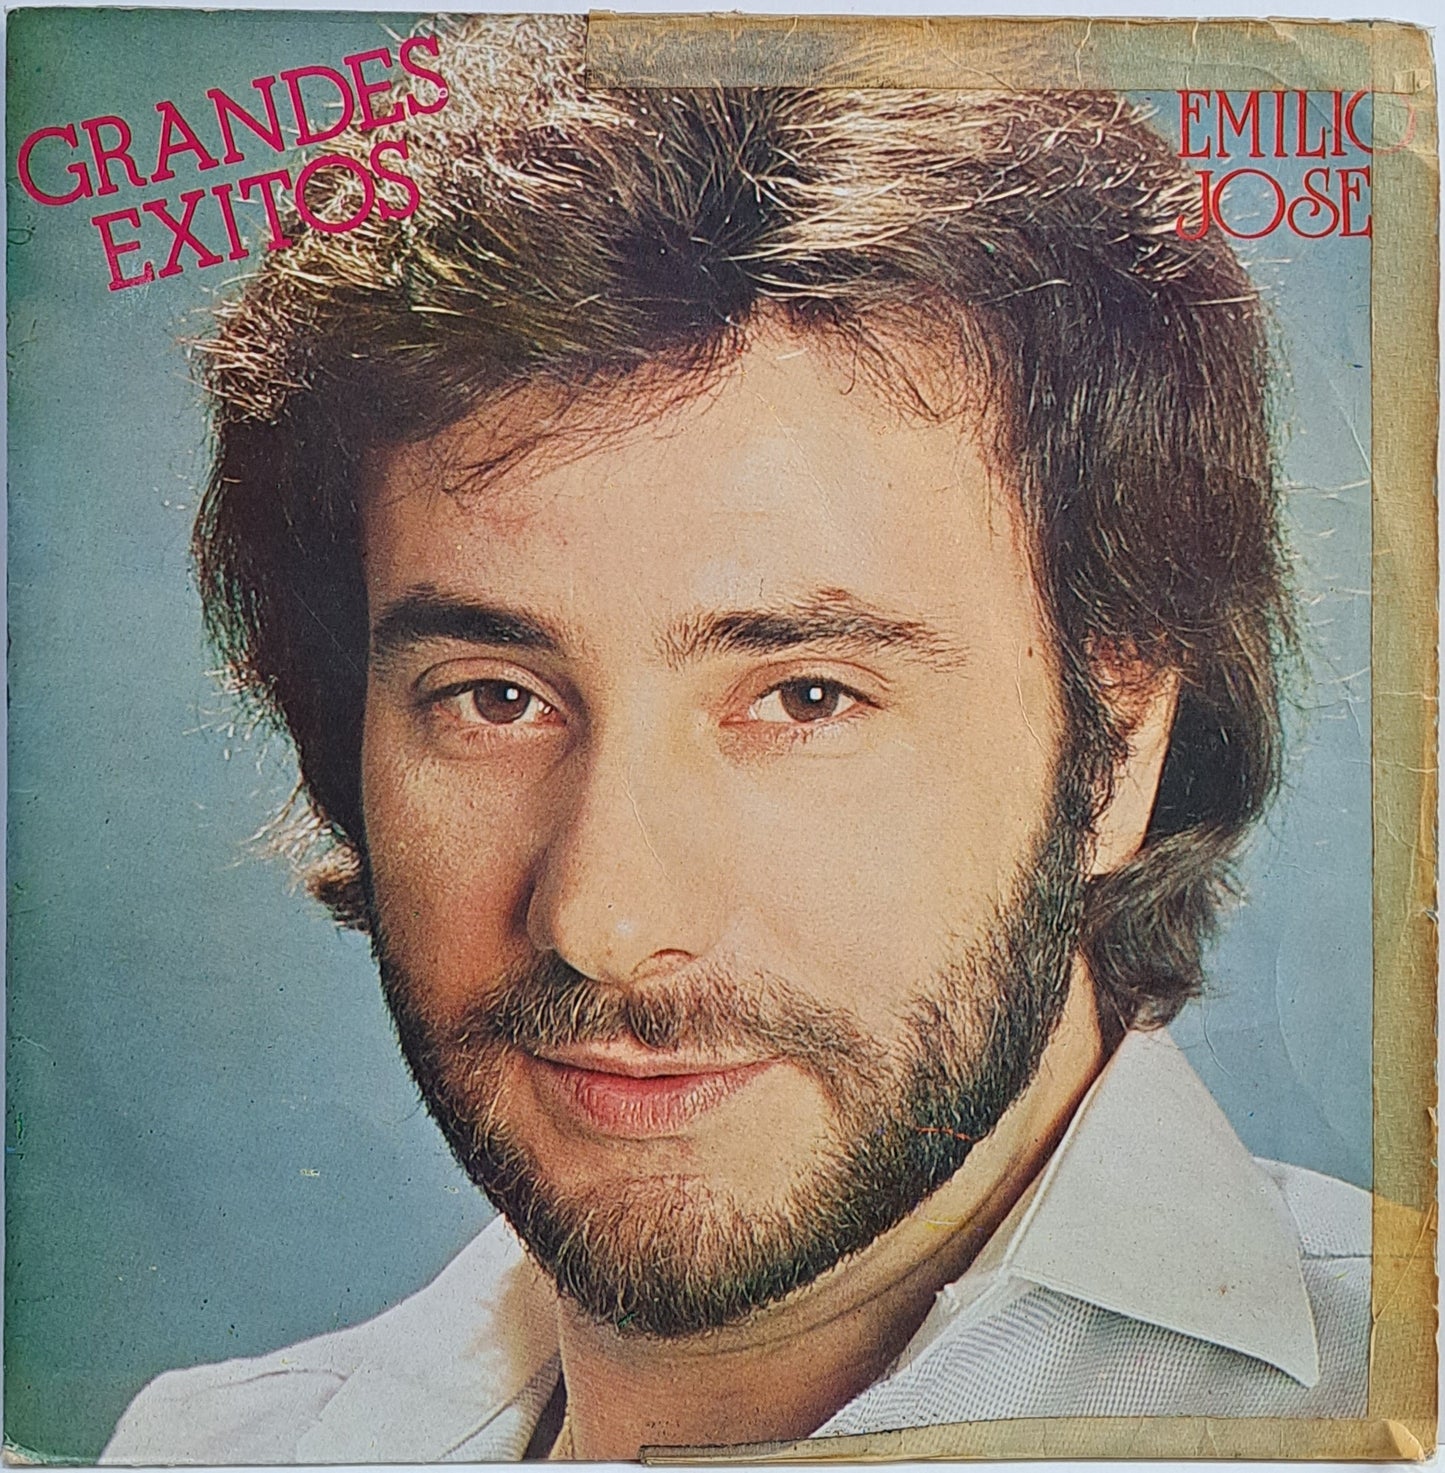 EMILIO JOSE - GRANDES EXITOS  LP